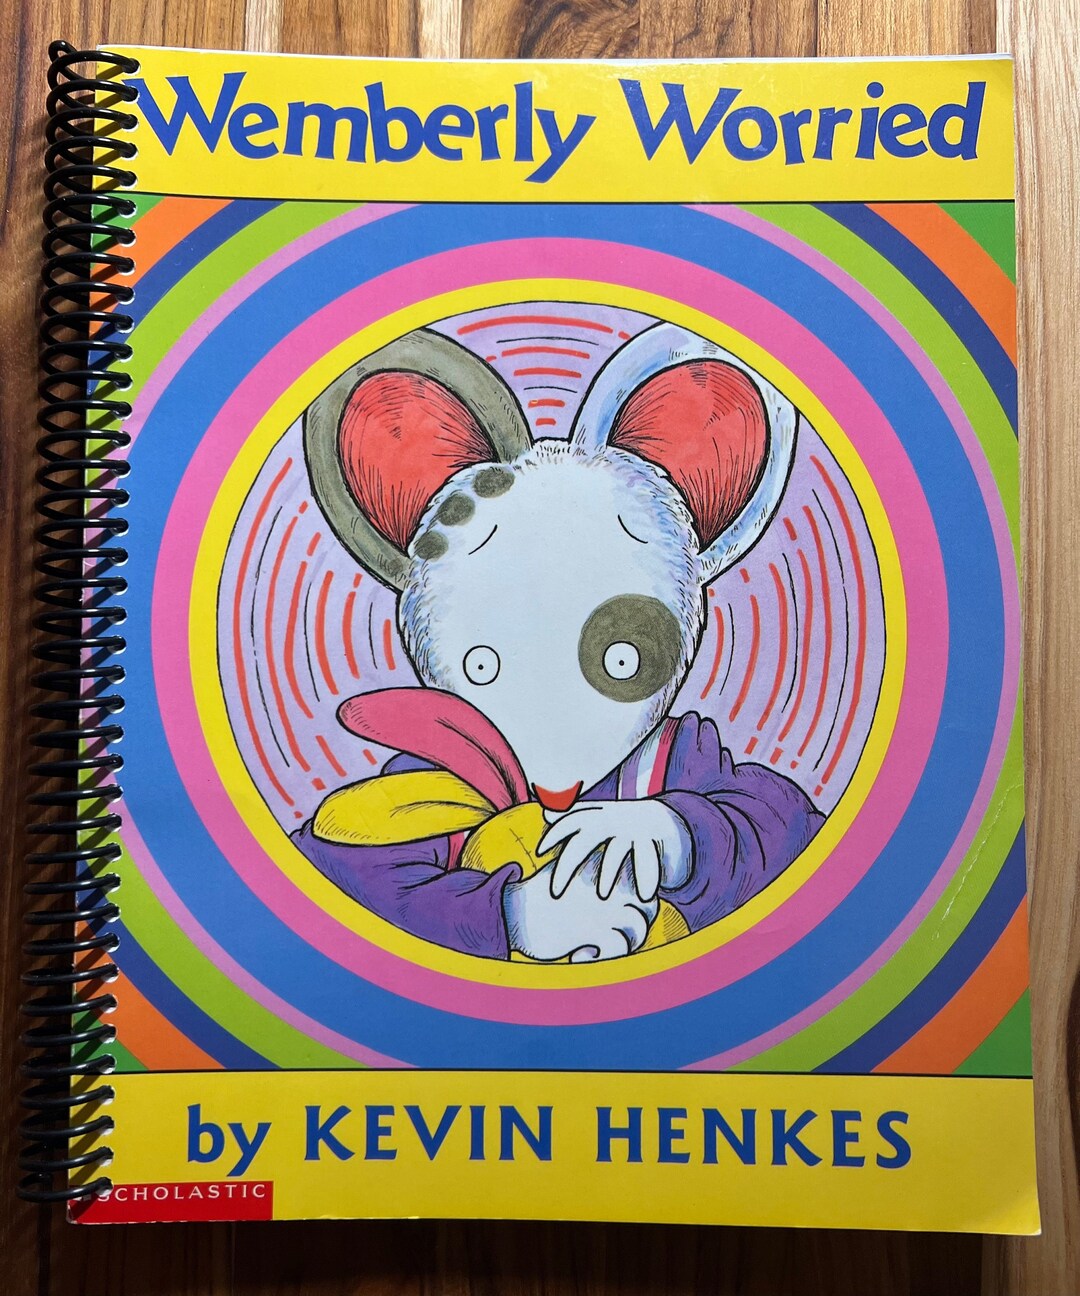 Sketchbook　notebook　Journal　Wemberly　Etsy　Worried　Memory